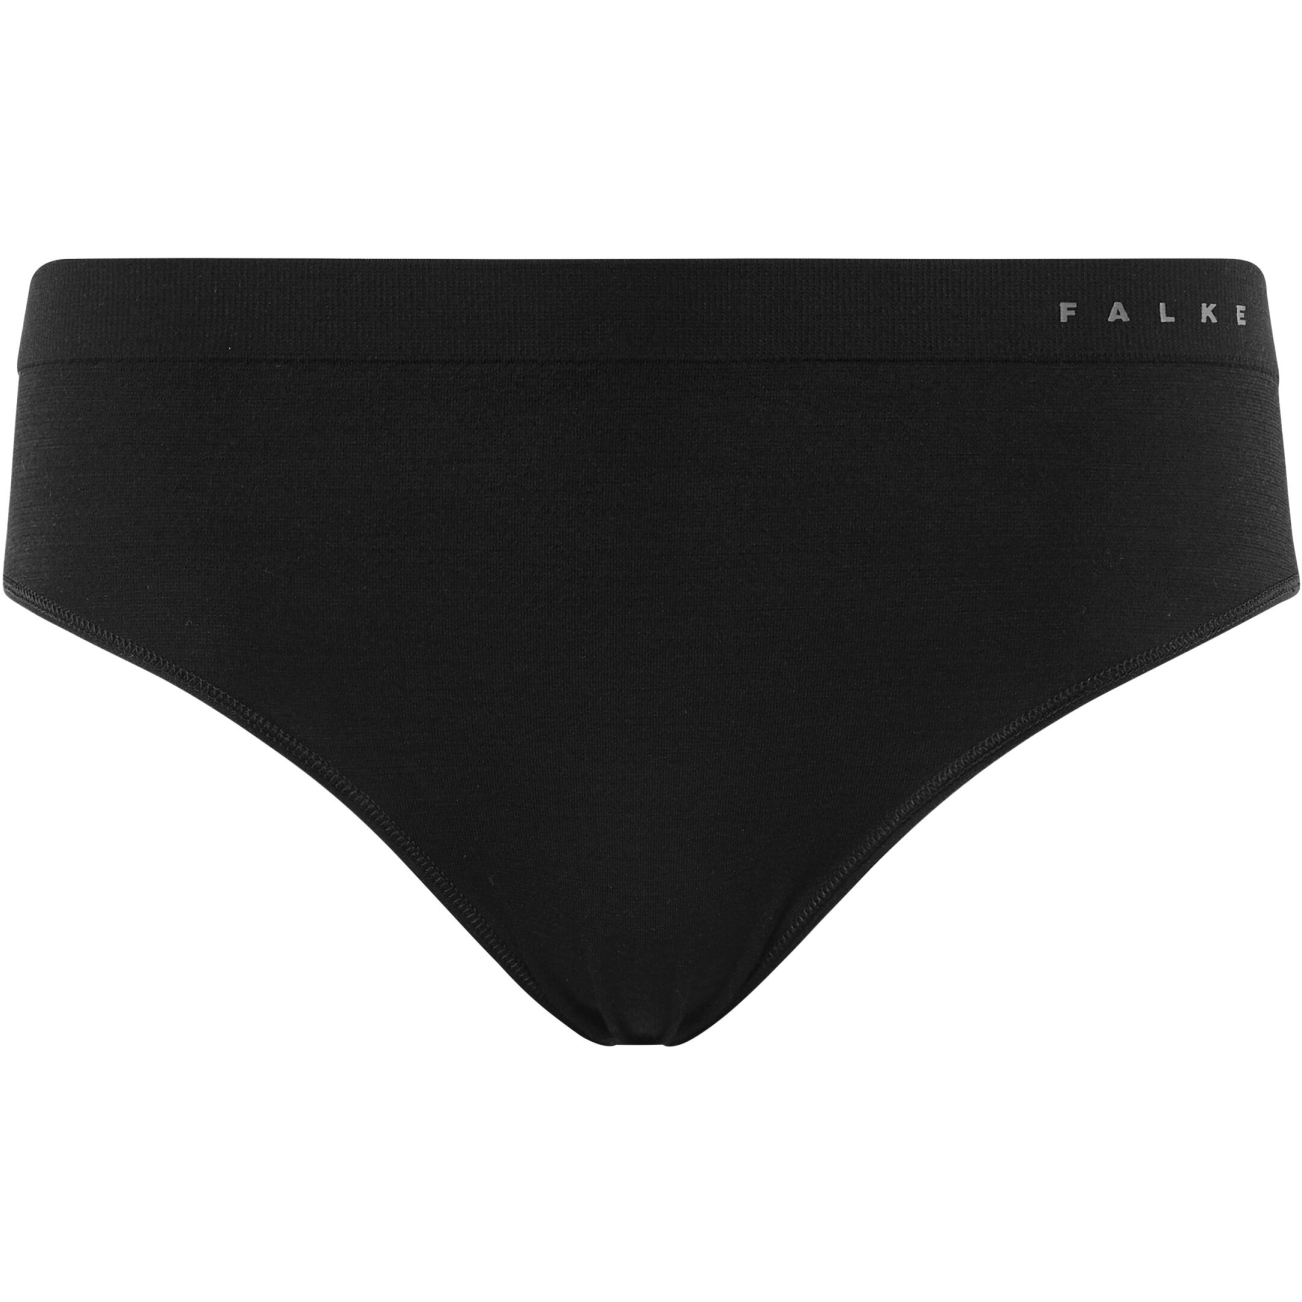 Produktbild von Falke Wool-Tech Light Panties Damen - schwarz 3000 (33462)